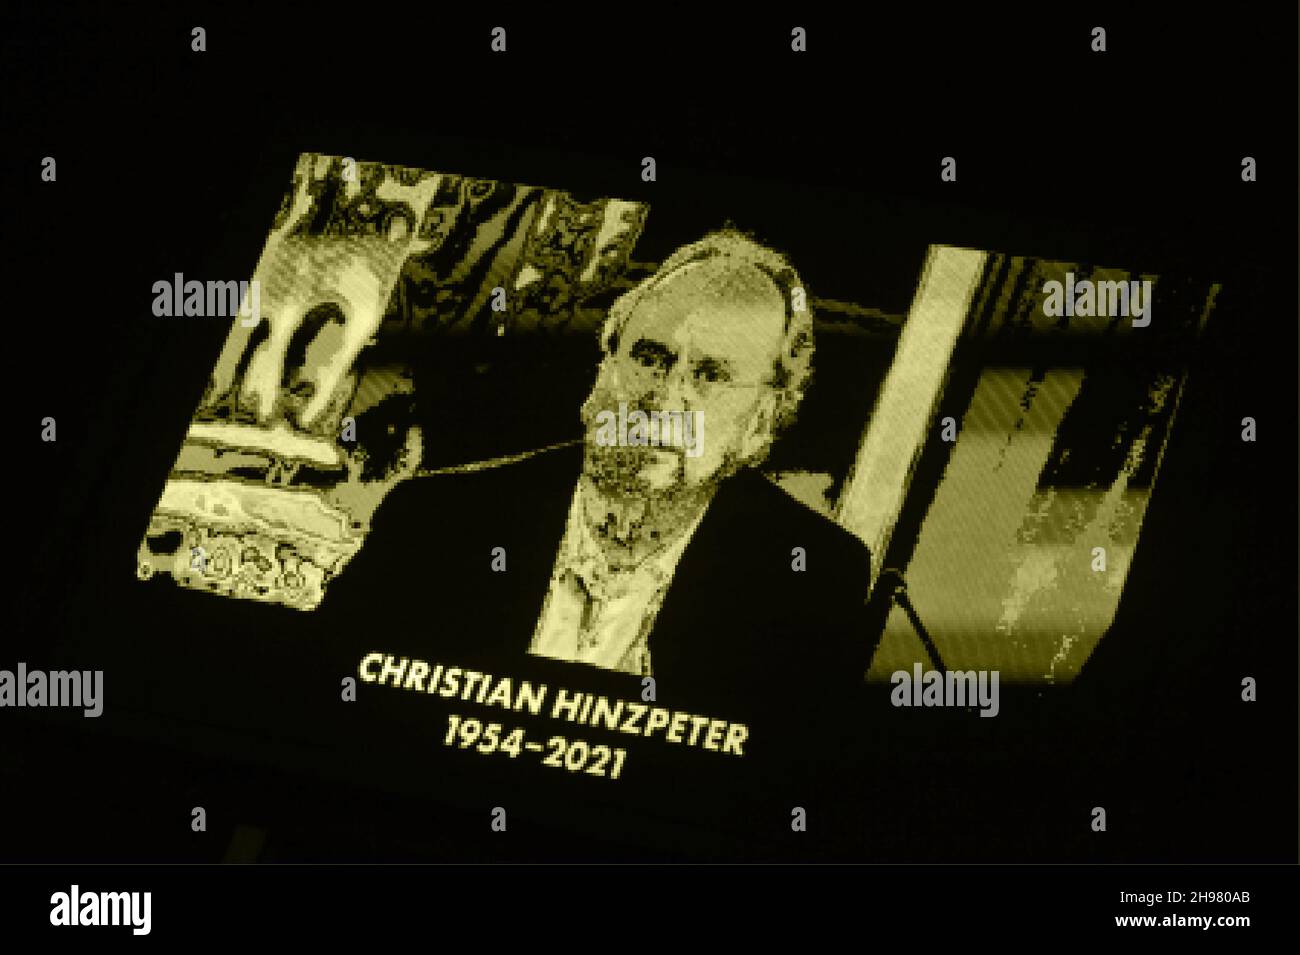 Gedenken an den verstorbenen Geschaftssführer Christian Hinzpeter des Zweitligisten FC St. Pauli auf der Stadion-Tafel am Millerntor, Hambourg, Allemagne Banque D'Images